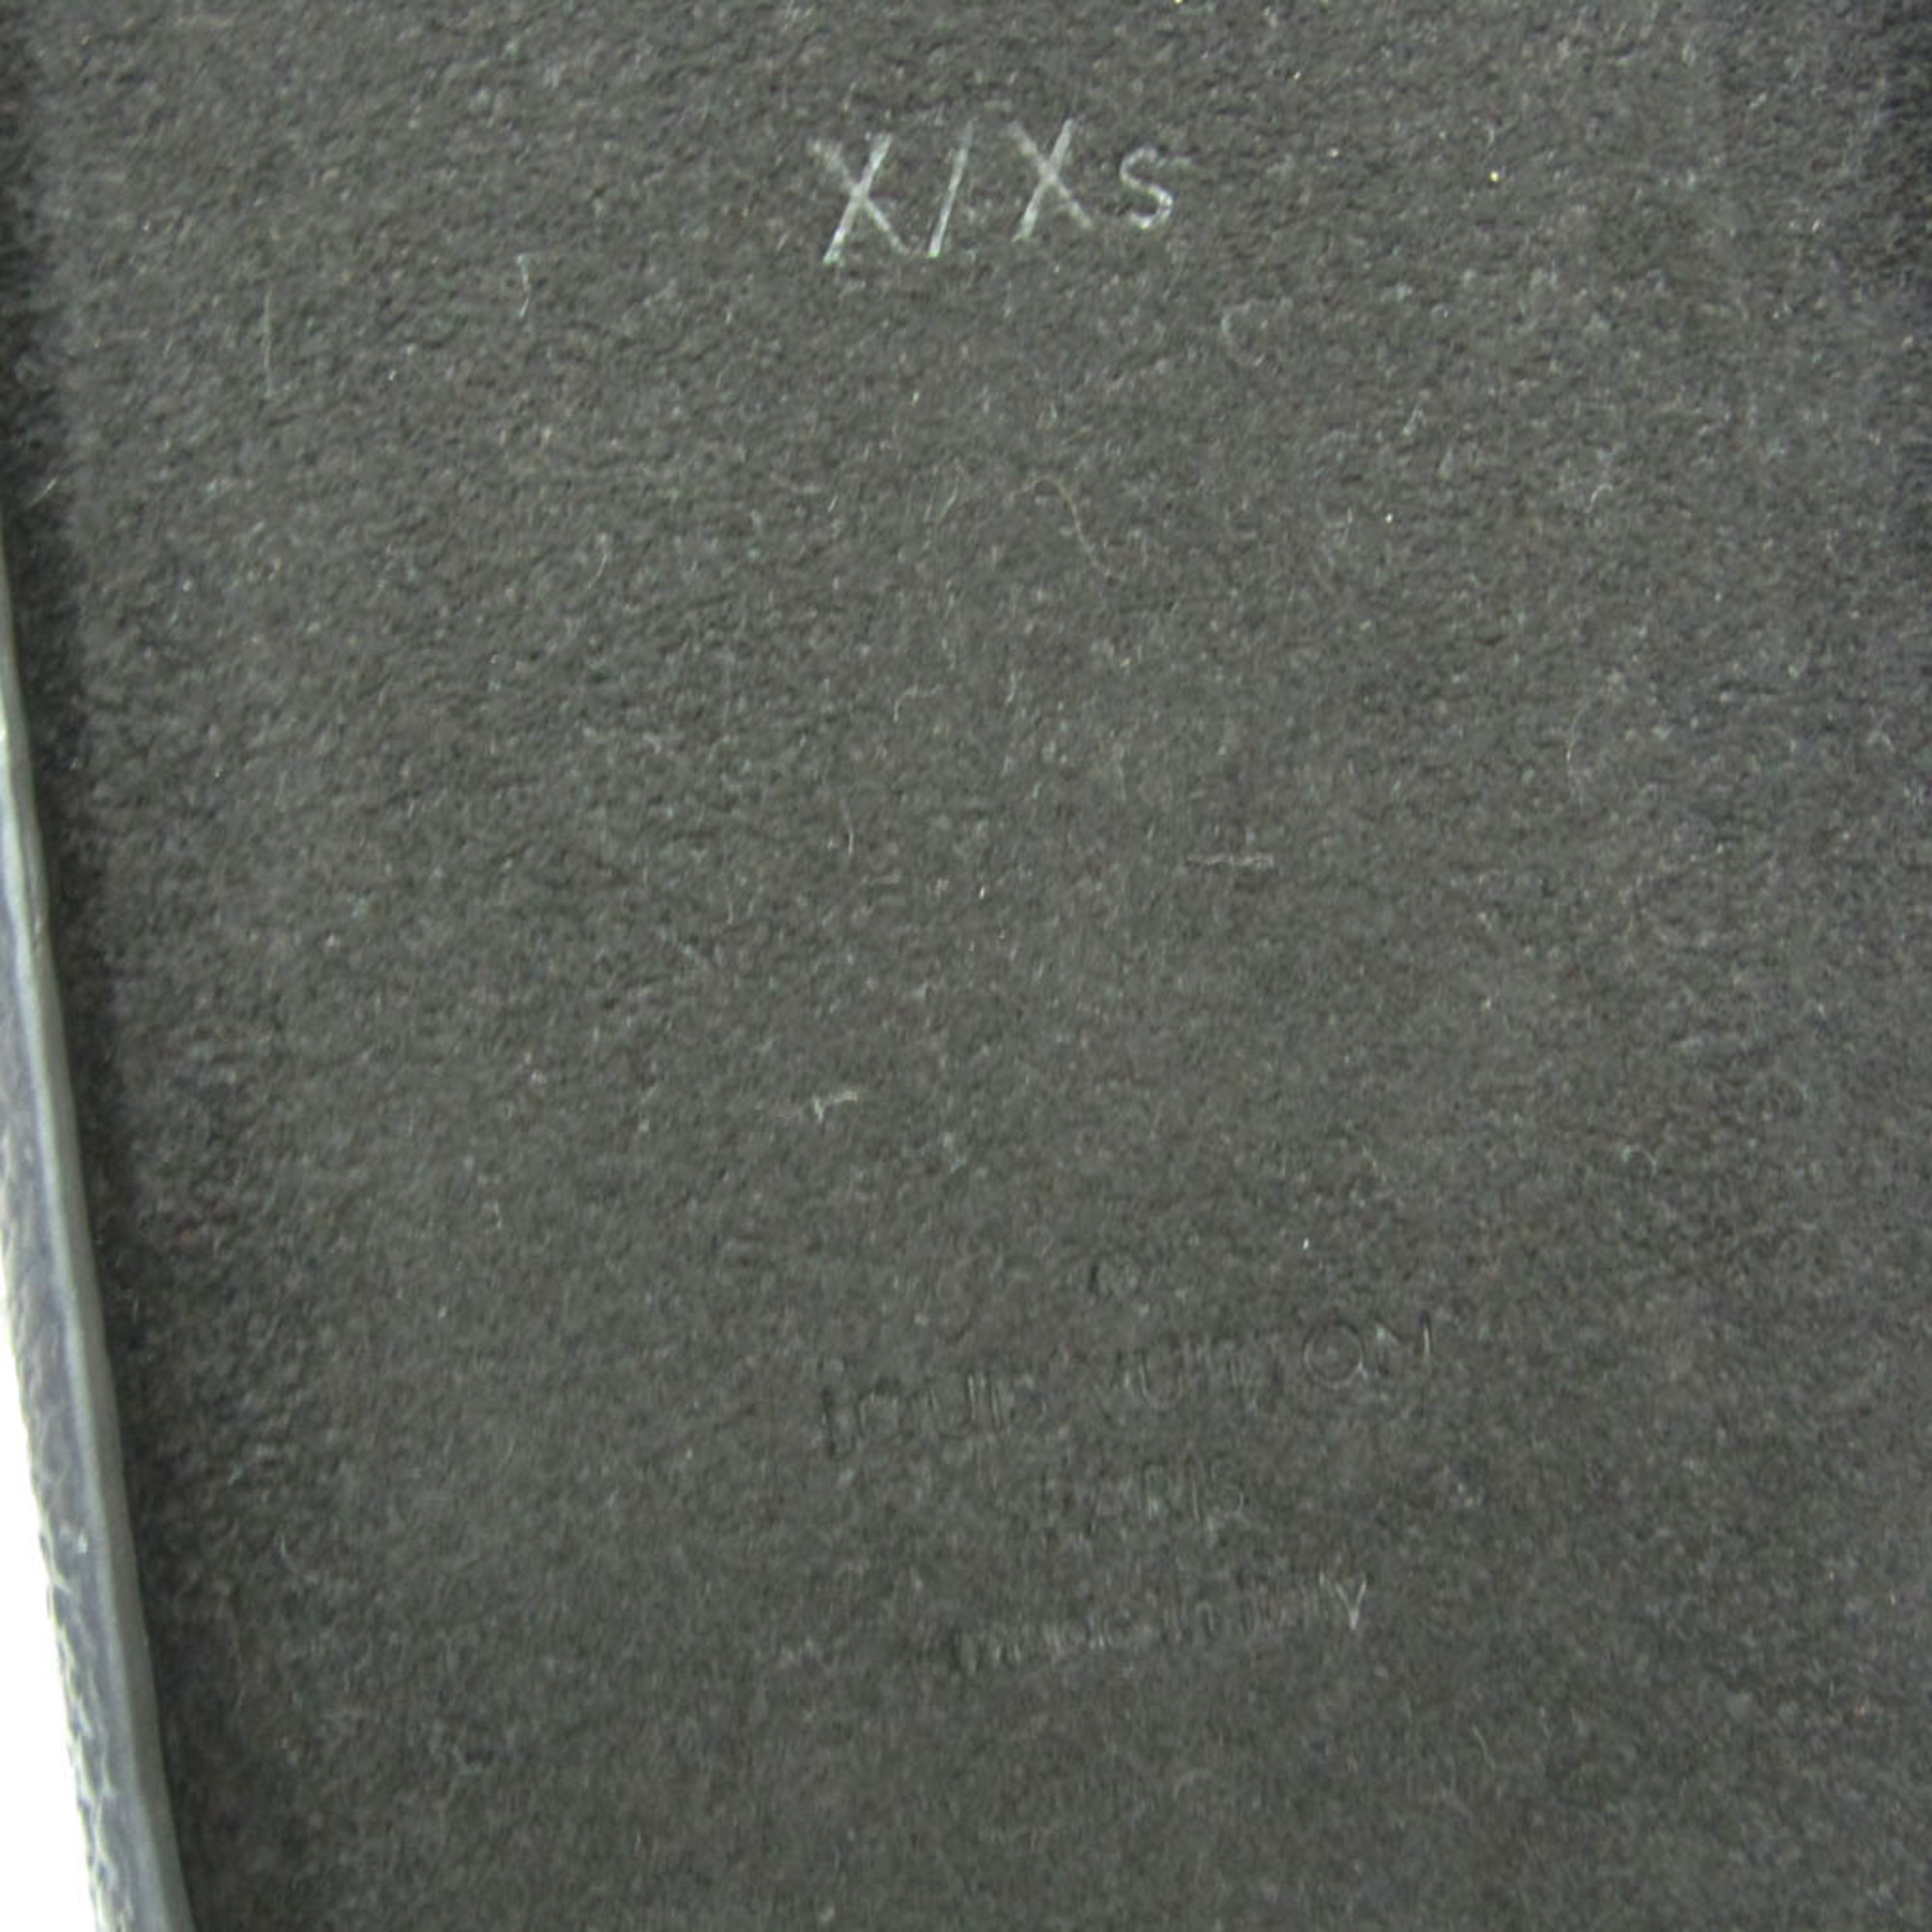 ルイ・ヴィトン(Louis Vuitton) モノグラム PHONEバンパー X/XS M68893 モノグラム バンパー iPhone X 対応 モノグラム,ノワール